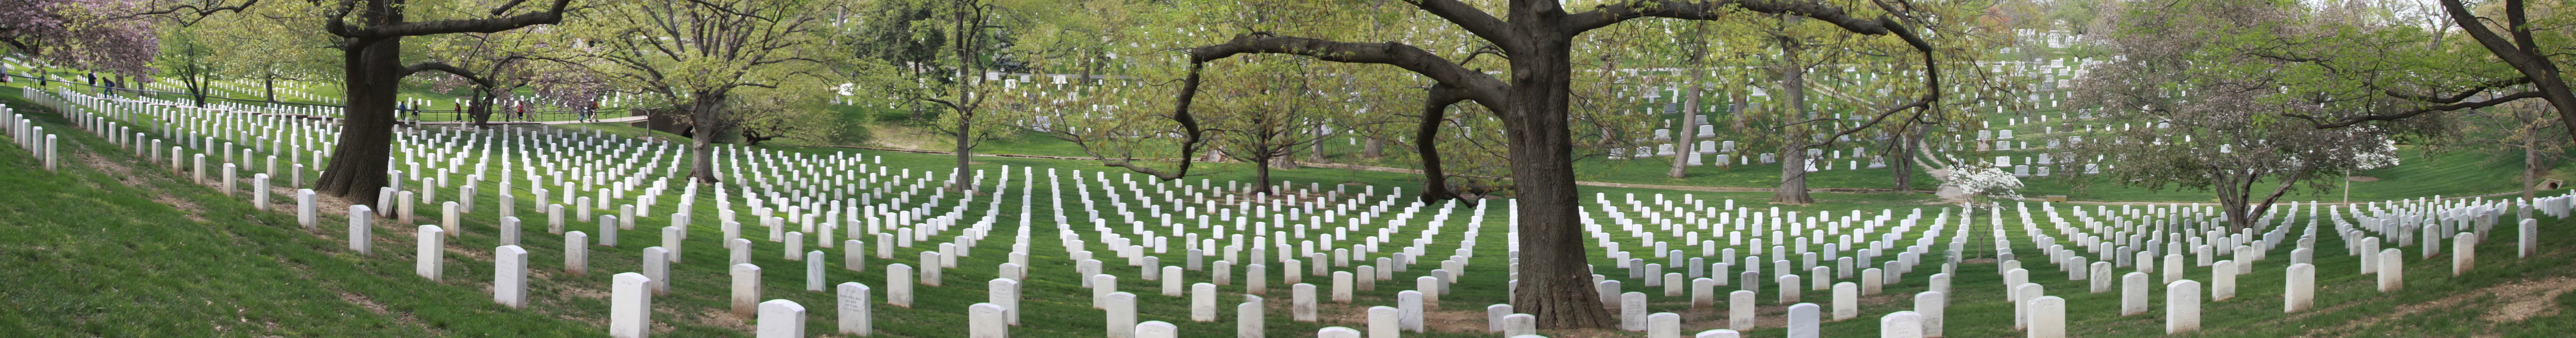 Arlington National Cemetary met 400.000 graven, mensen gestorven in actieve dienst, veteranen en hun familie